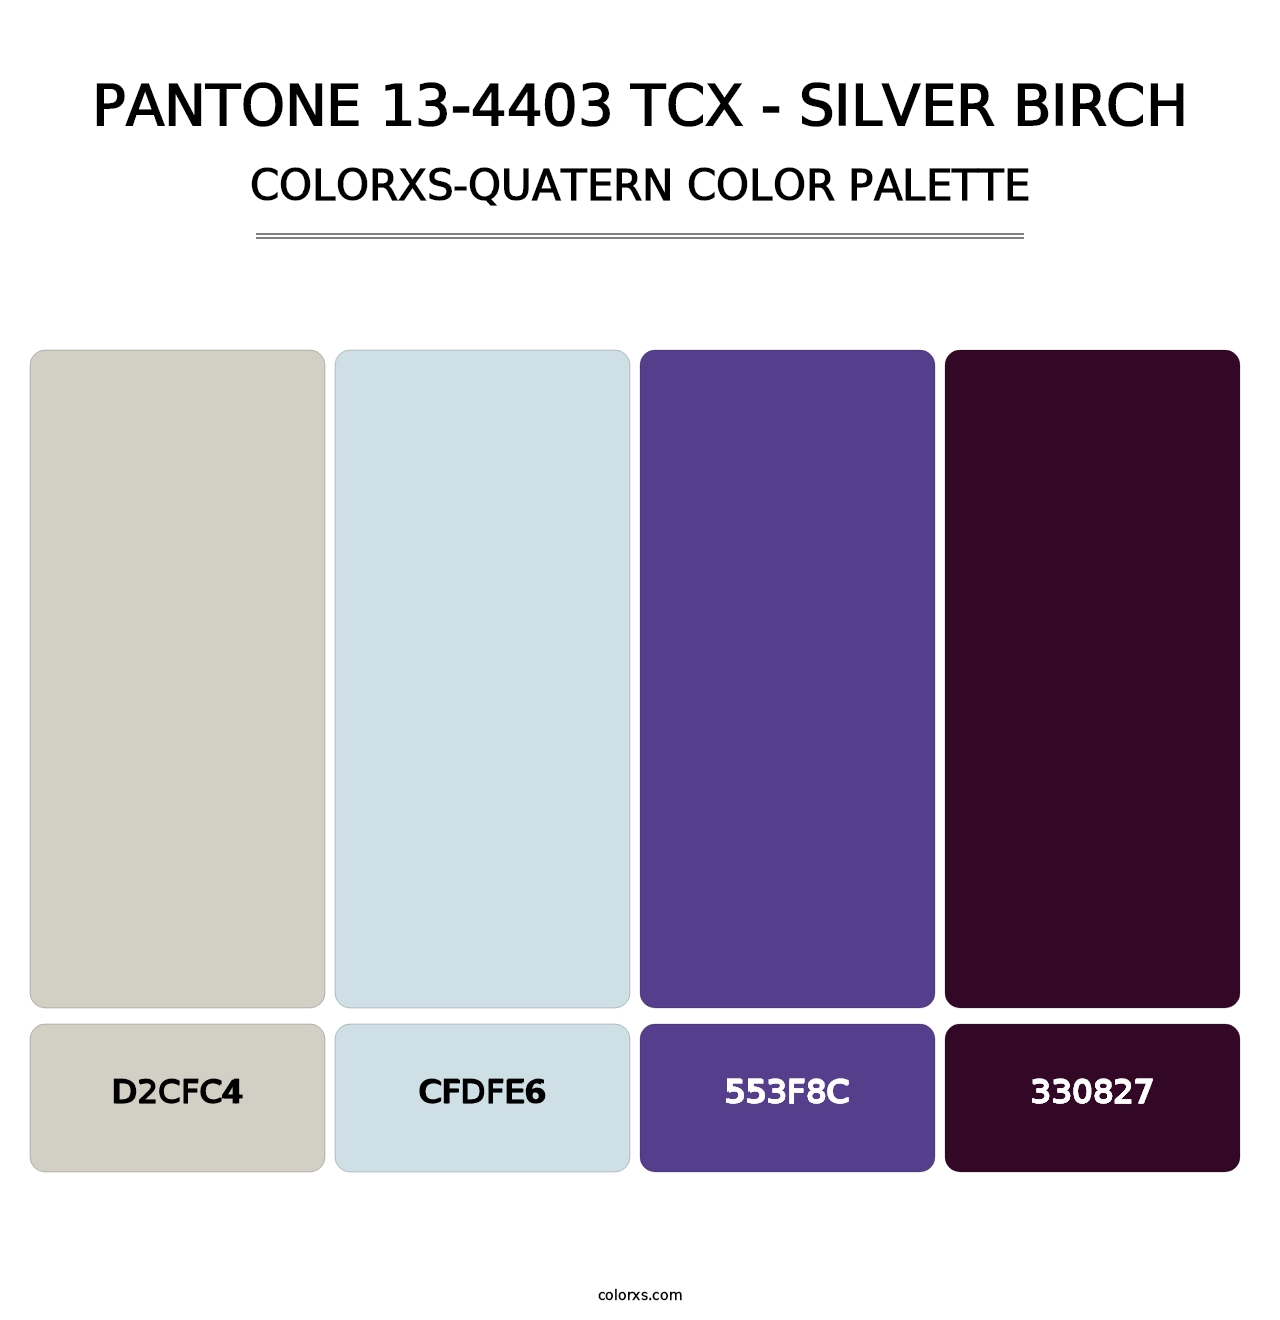 PANTONE 13-4403 TCX - Silver Birch - Colorxs Quatern Palette